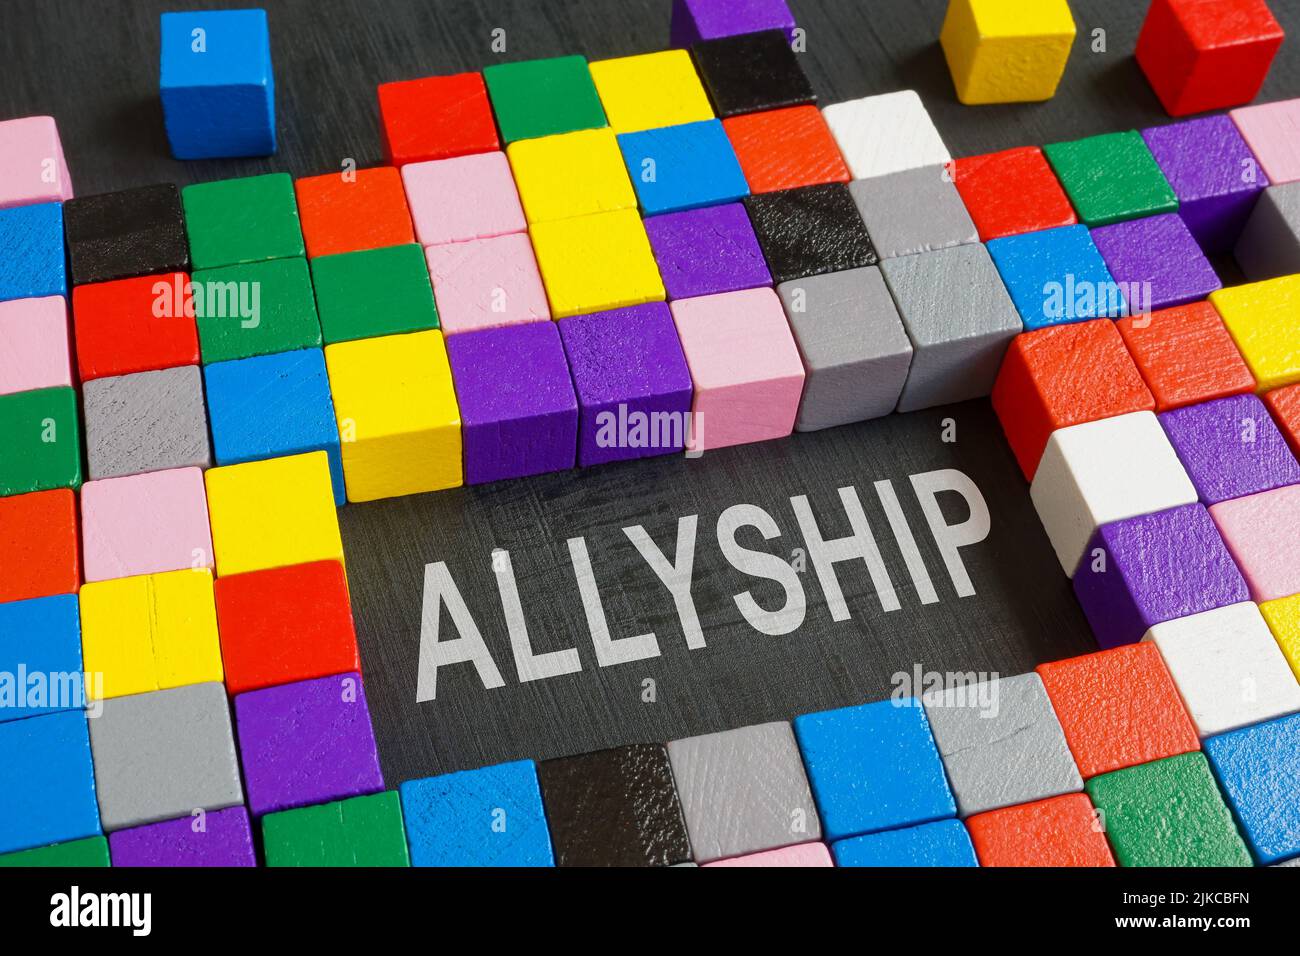 Aldyship de la palabra y cubos coloridos en la superficie oscura. Foto de stock